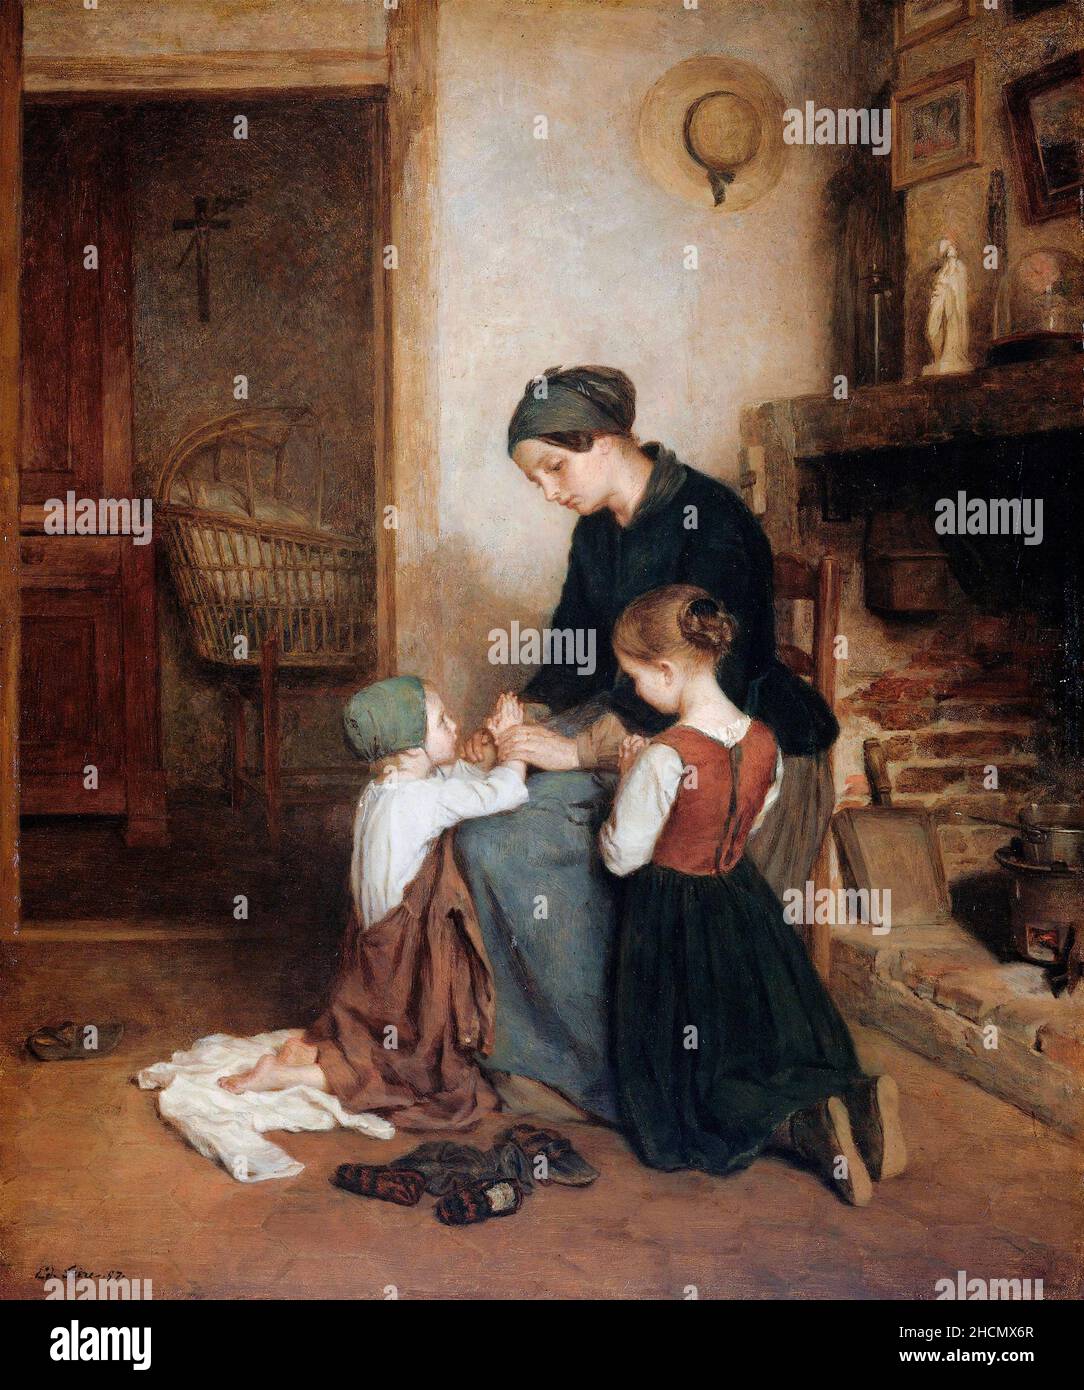 La prière du soir par Pierre Édouard frère (1819-1886), huile sur panneau, 1857 Banque D'Images